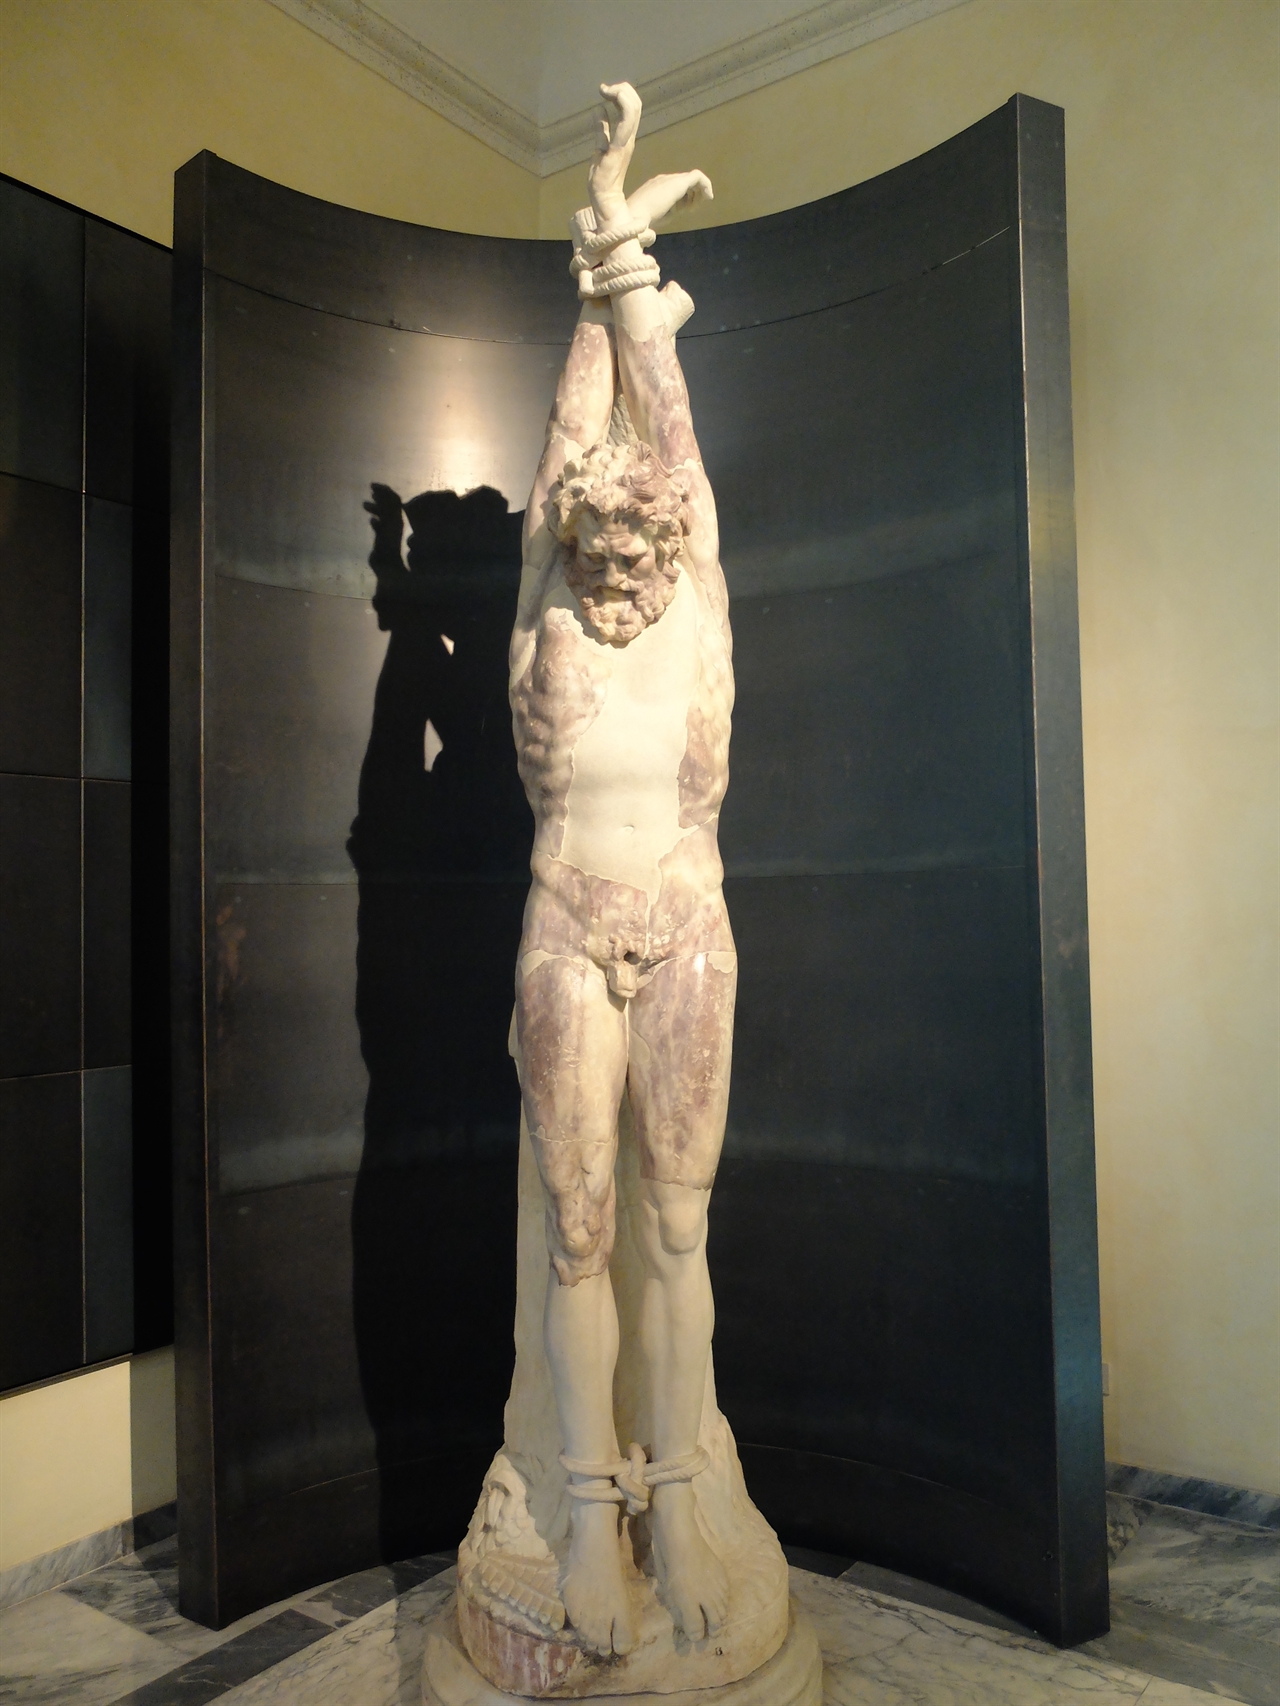 ‘마르시아스(Marsyas)상' 로마, 카피톨리니 박물관. 피리 연주 시합에 져서 아폴론으로부터 살가죽이 벗겨진 채 비참한 죽음을 맞이한 마르시아스의 모습니다. 